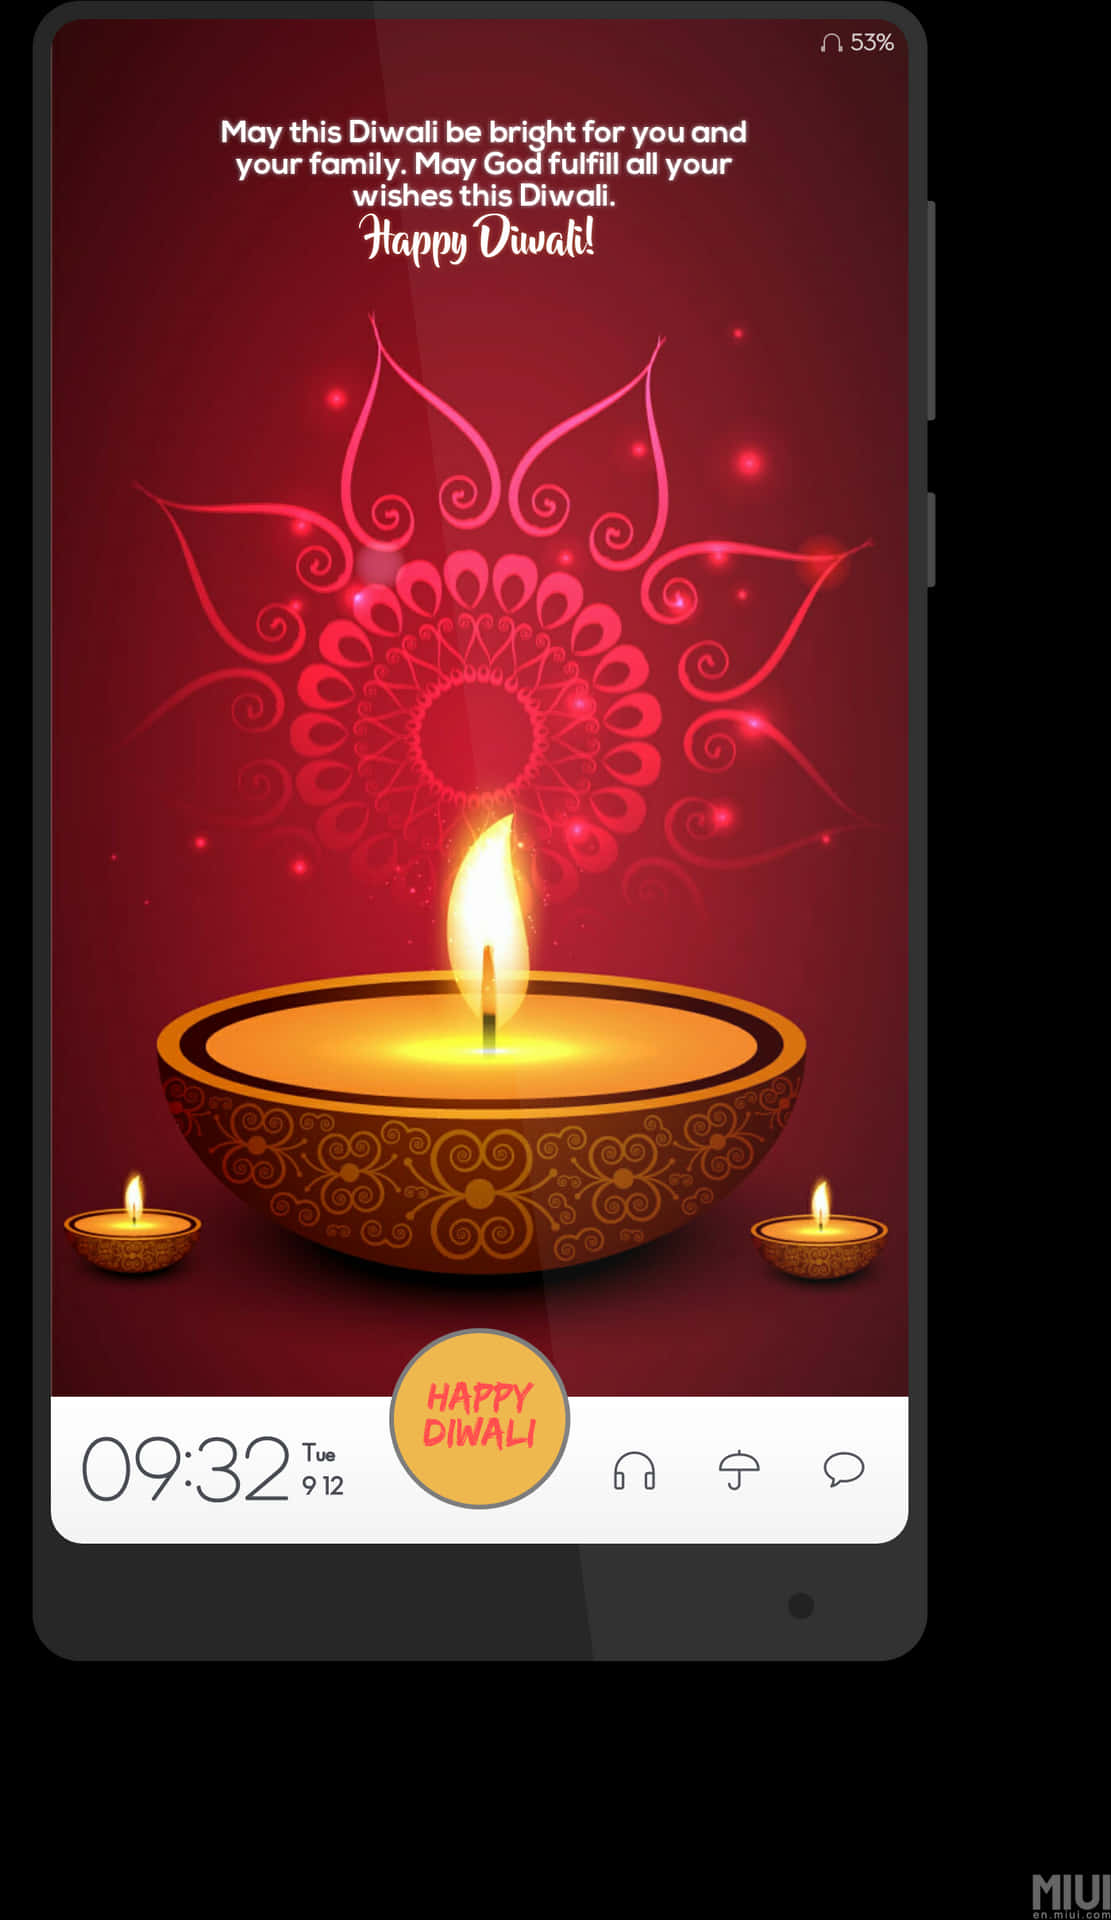 Diwali Greetings Mobile Screen PNG